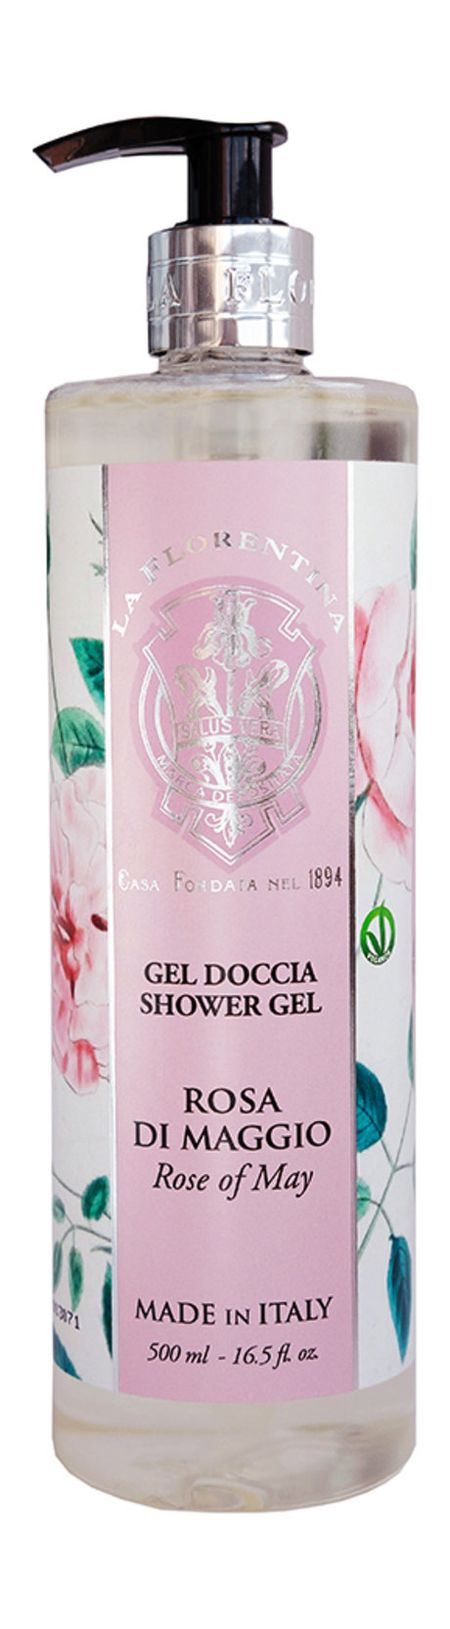 la florentina shower gel rose of may